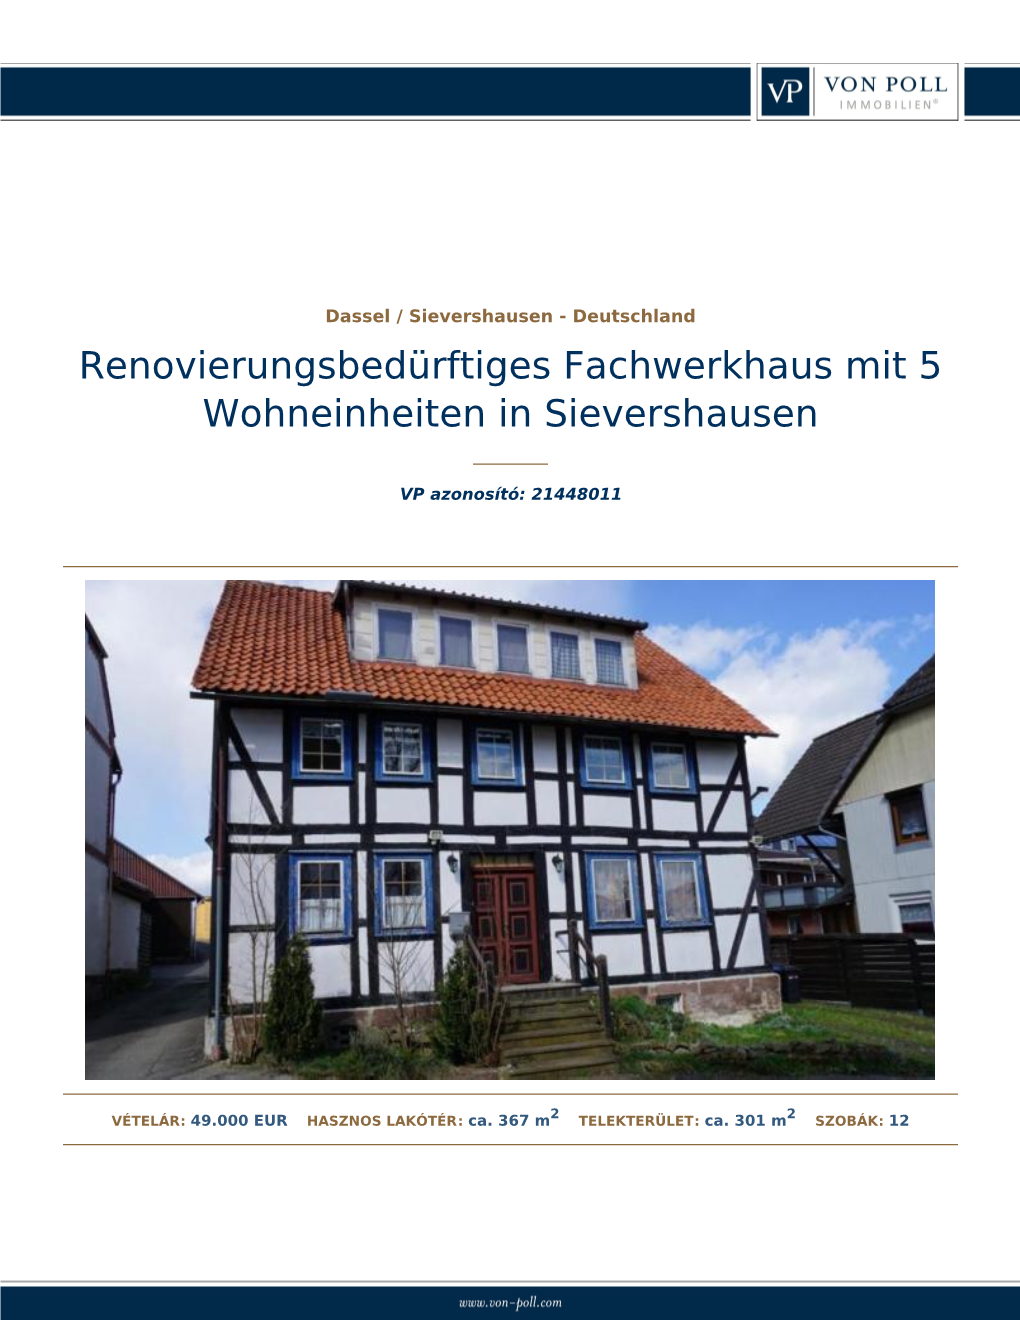 Renovierungsbedürftiges Fachwerkhaus Mit 5Wohneinheiten in Sievershausen